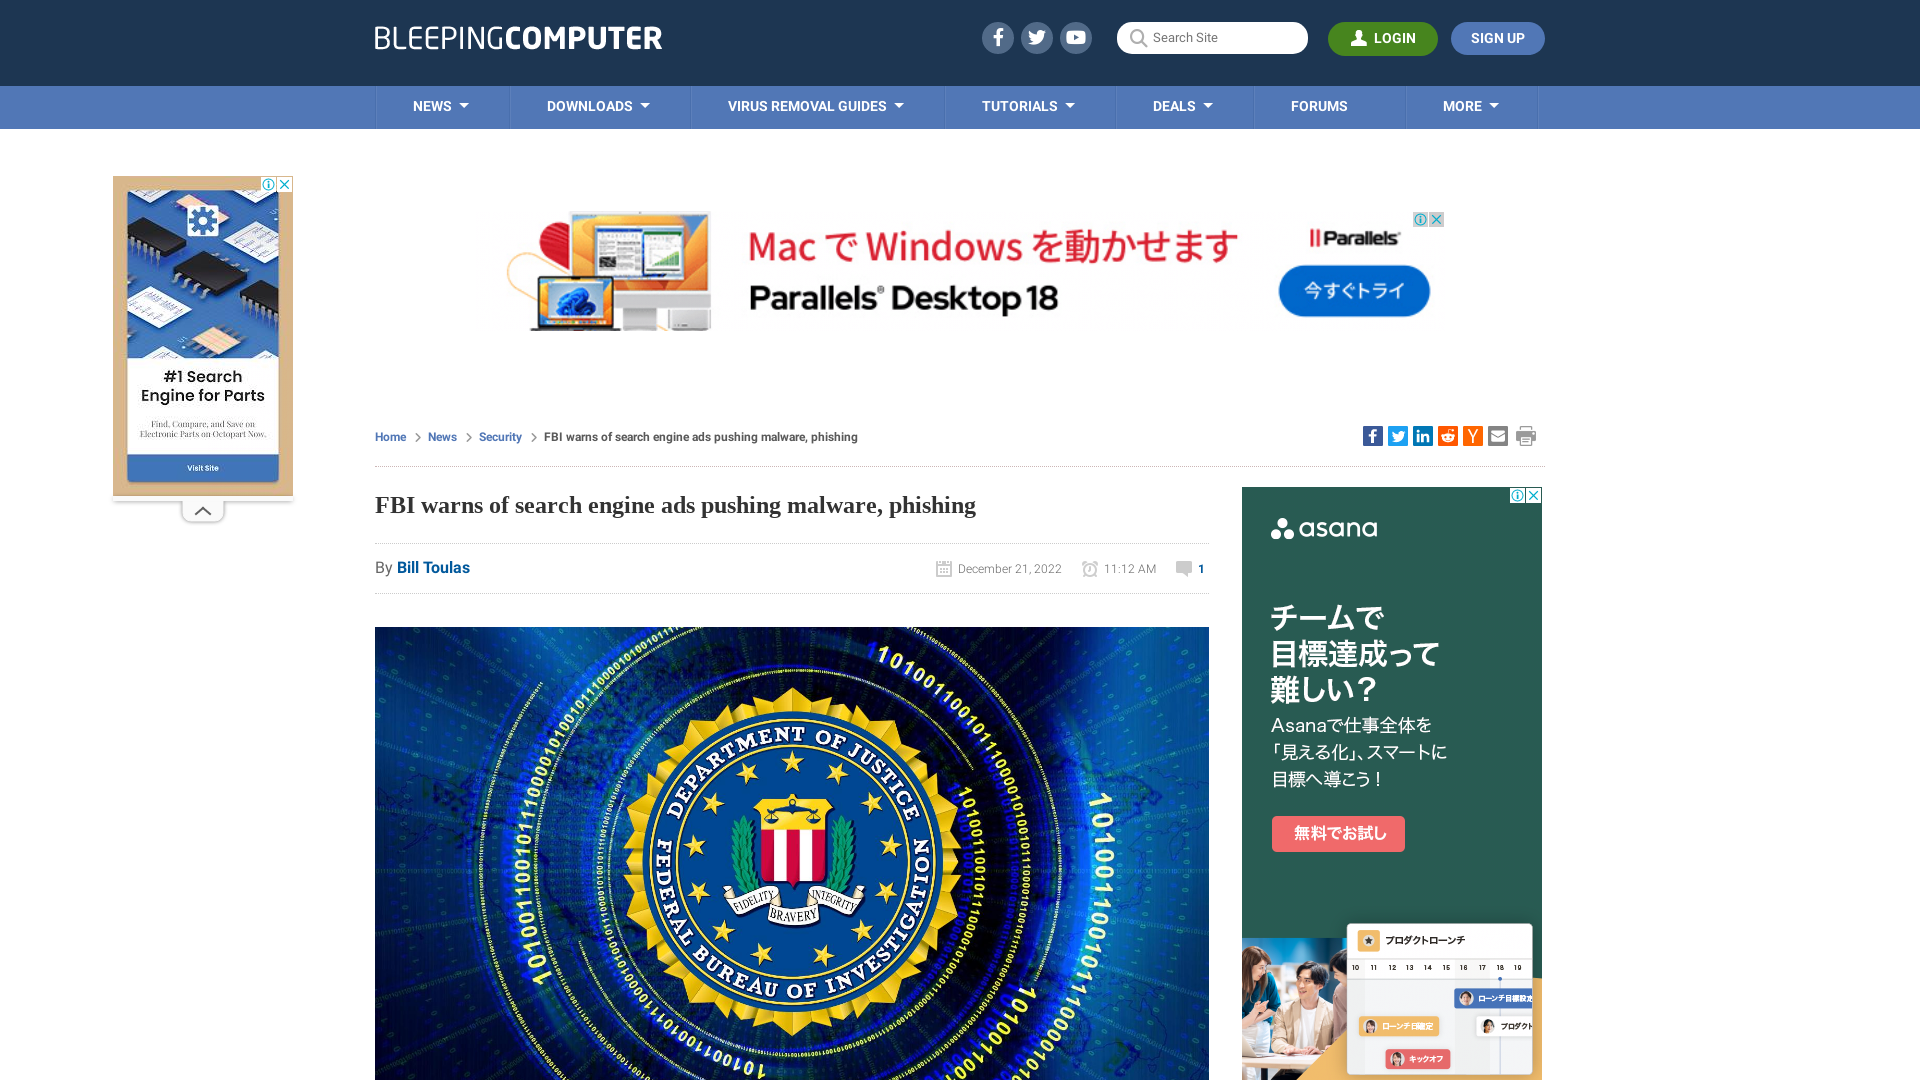 FBI warns of search engine ads pushing malware, phishing